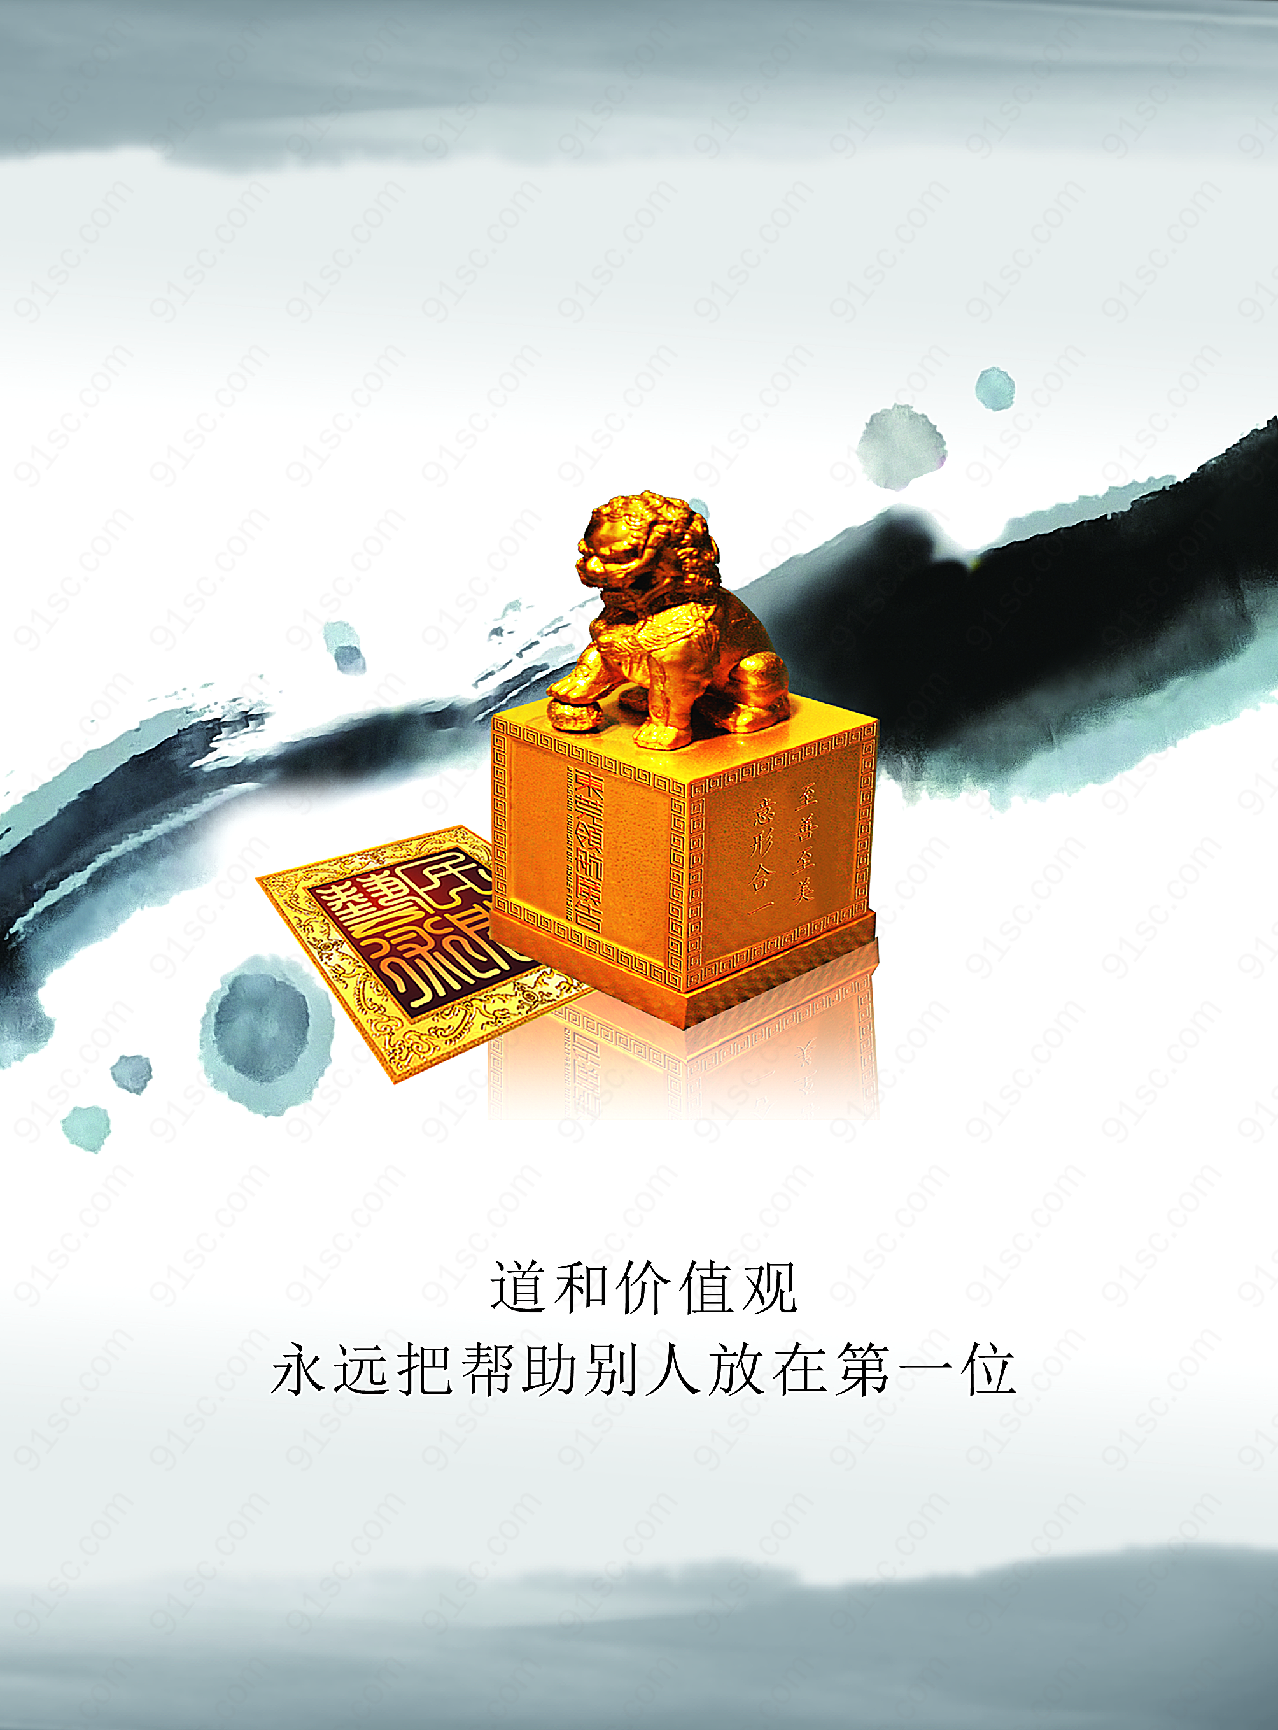 中国水墨画设计广告